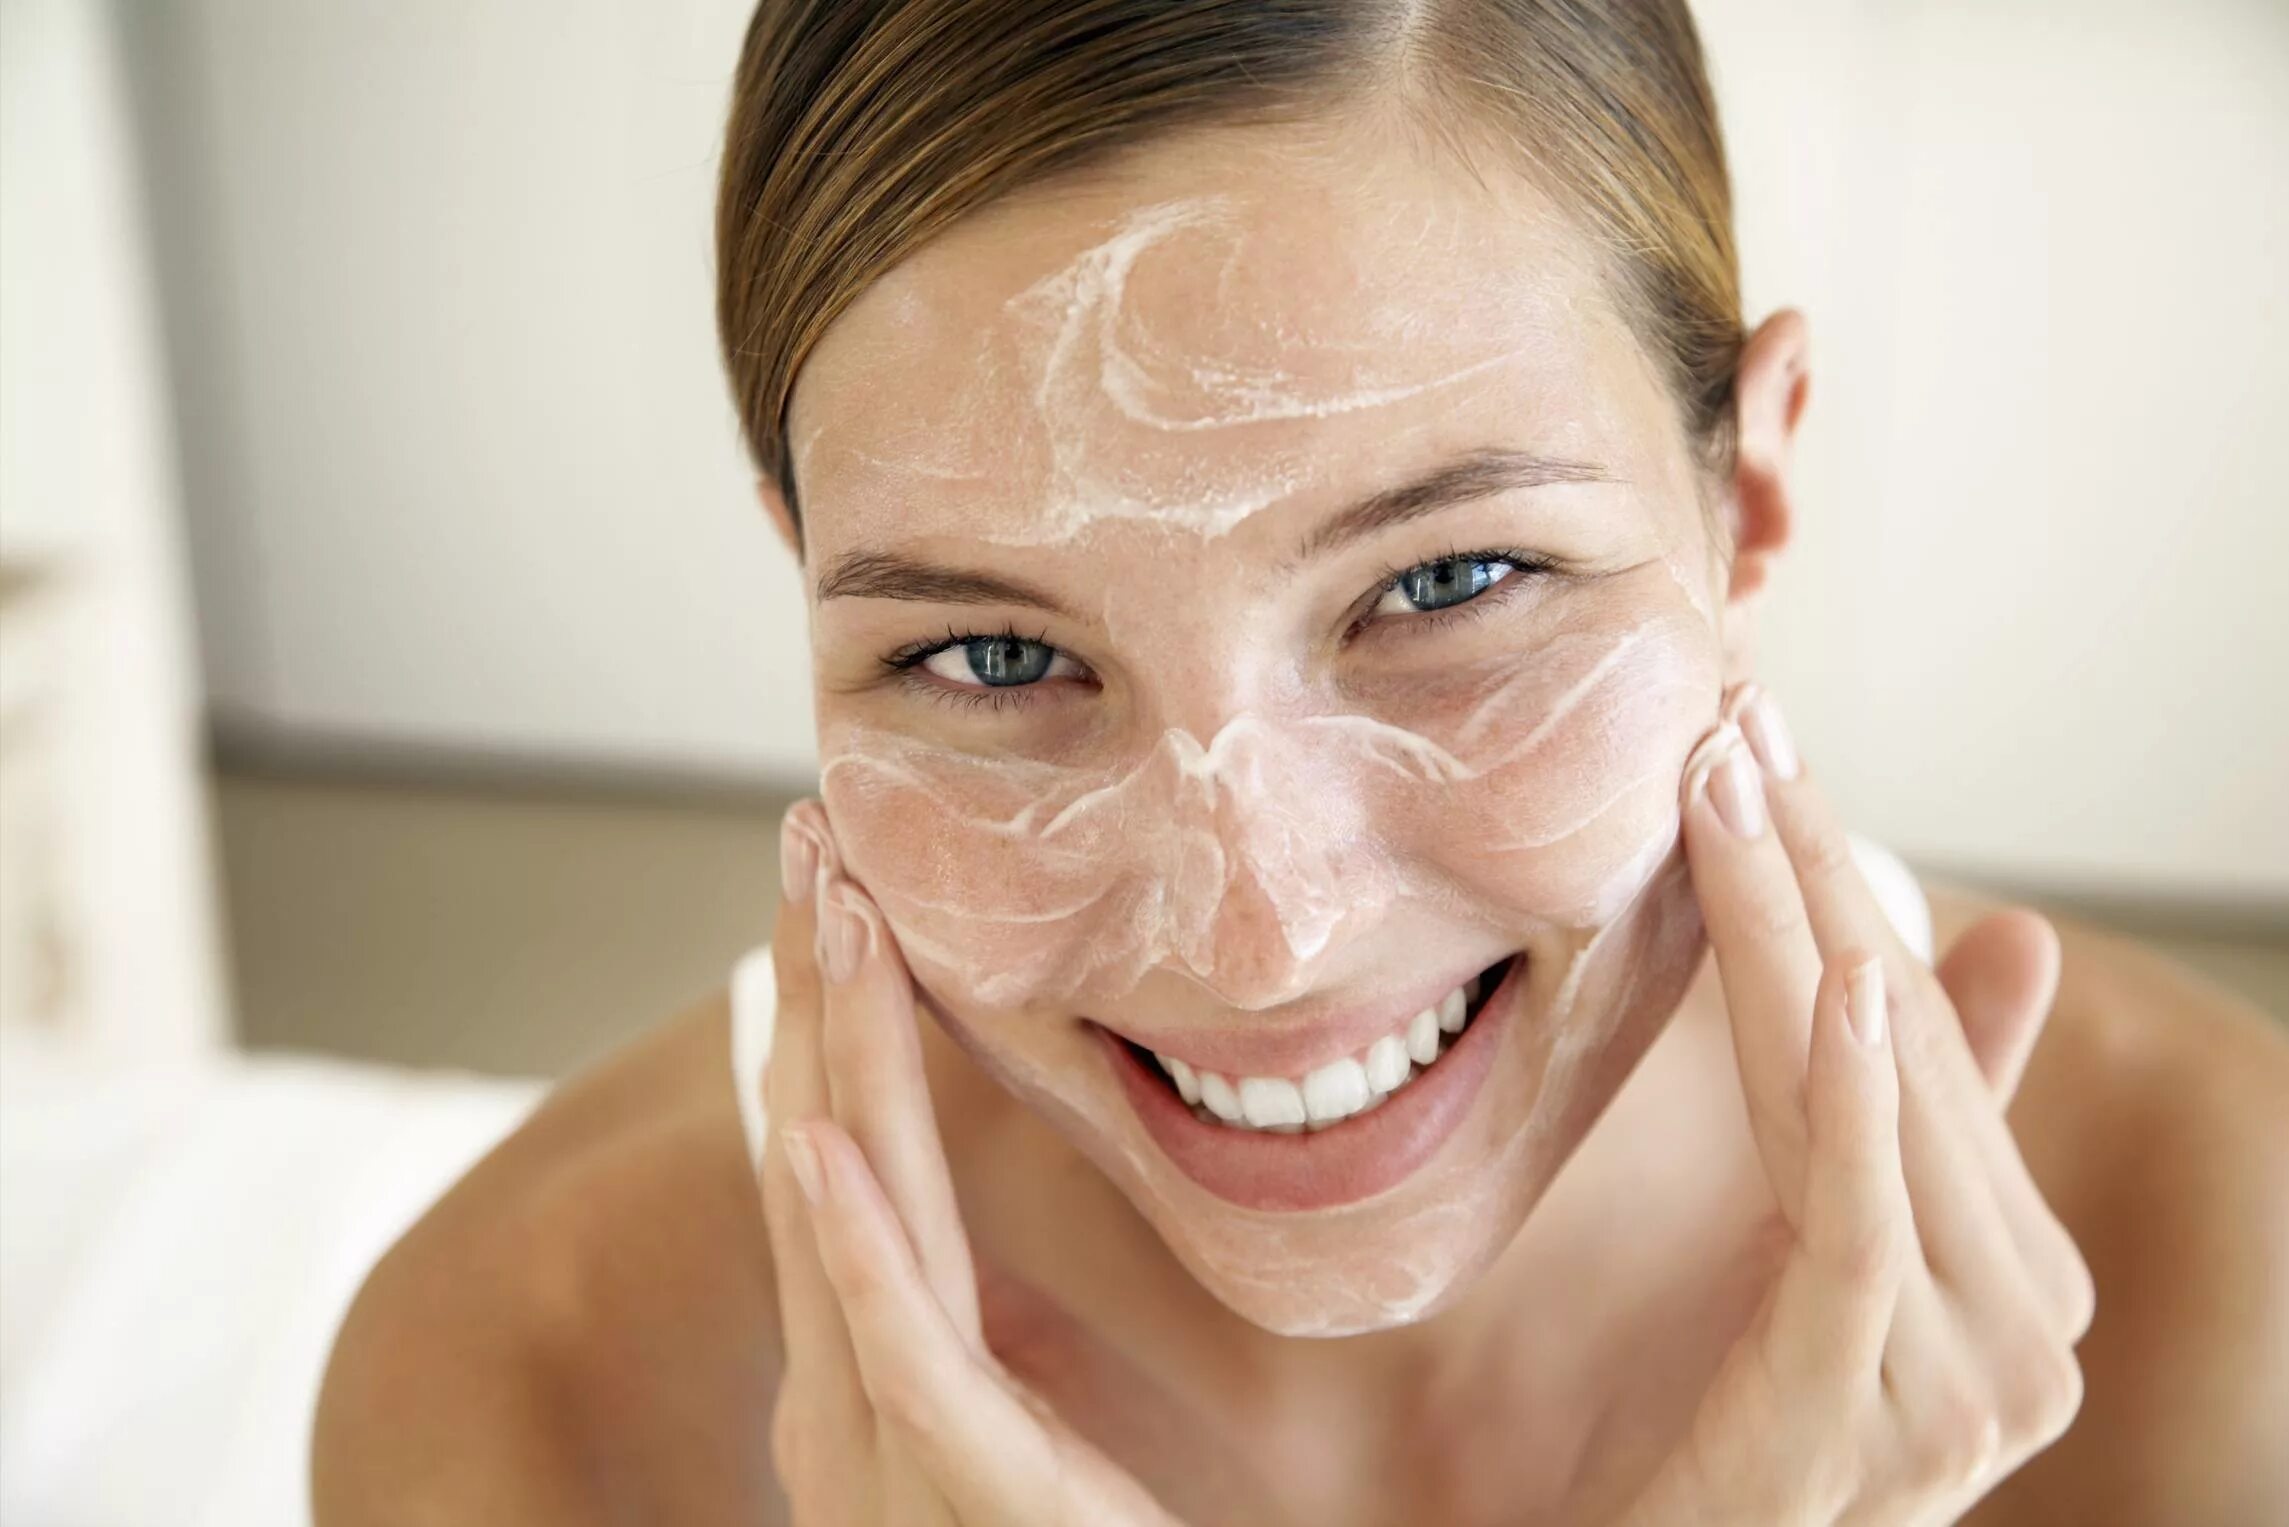 Clean your skin. Крем для лица. Увлажнение кожи лица. Нанесение крема на кожу. Девушка умывается.